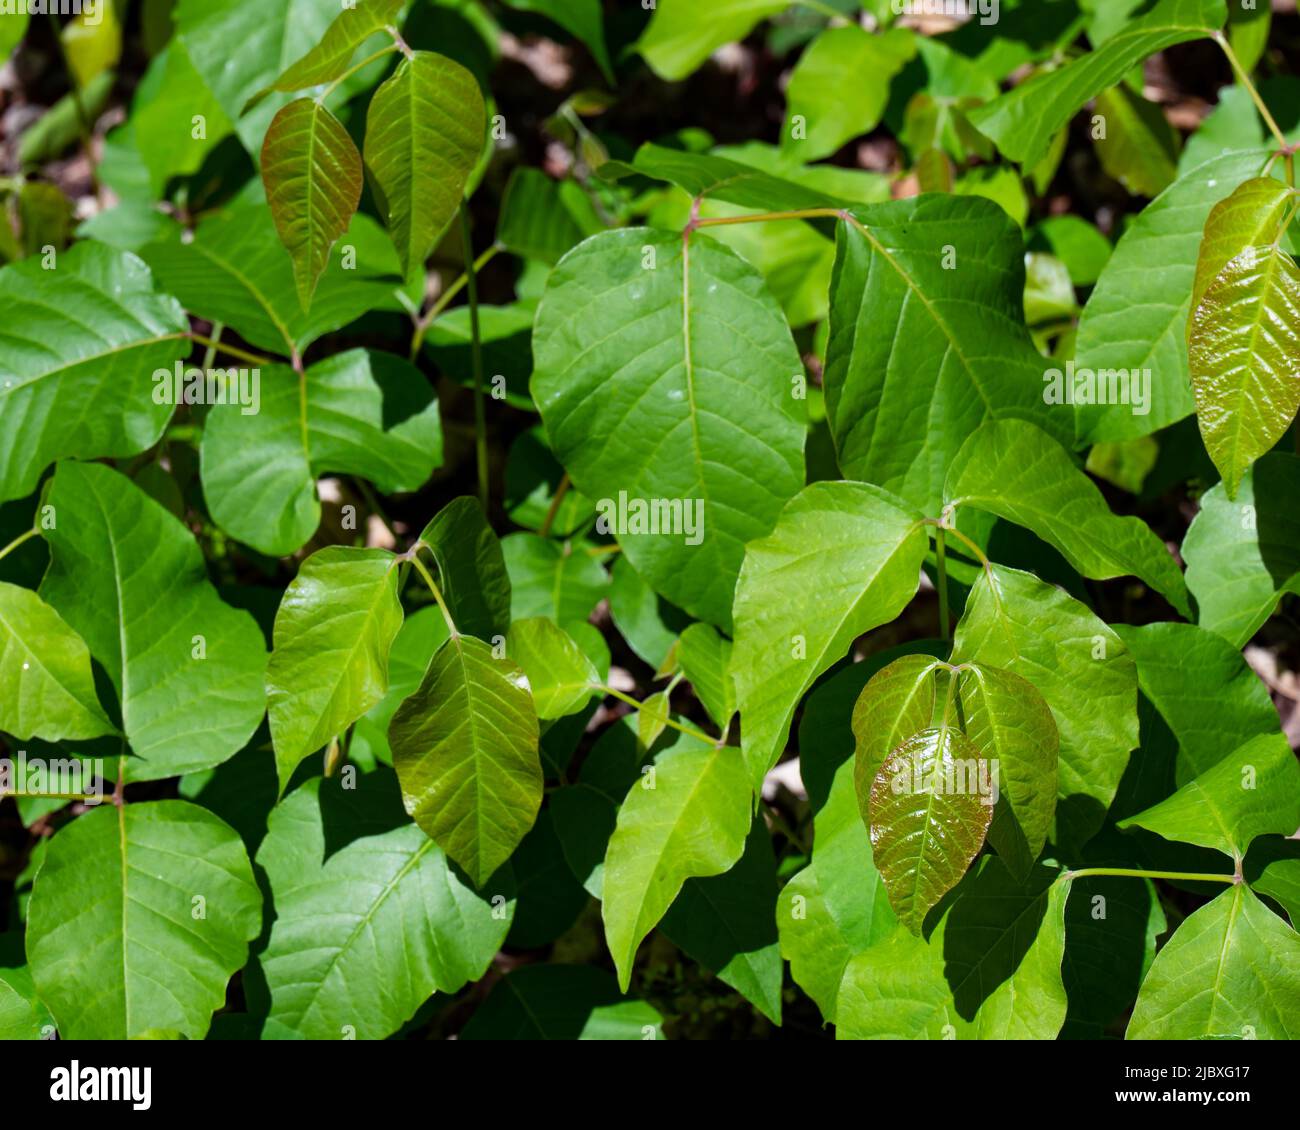 Ein Fleck von Giftefeu, einer allergenen Pflanze, Toxicodendron radicans, die in den Adirondack Mountains, NY USA, wächst und Kontaktdermatitis verursacht Stockfoto